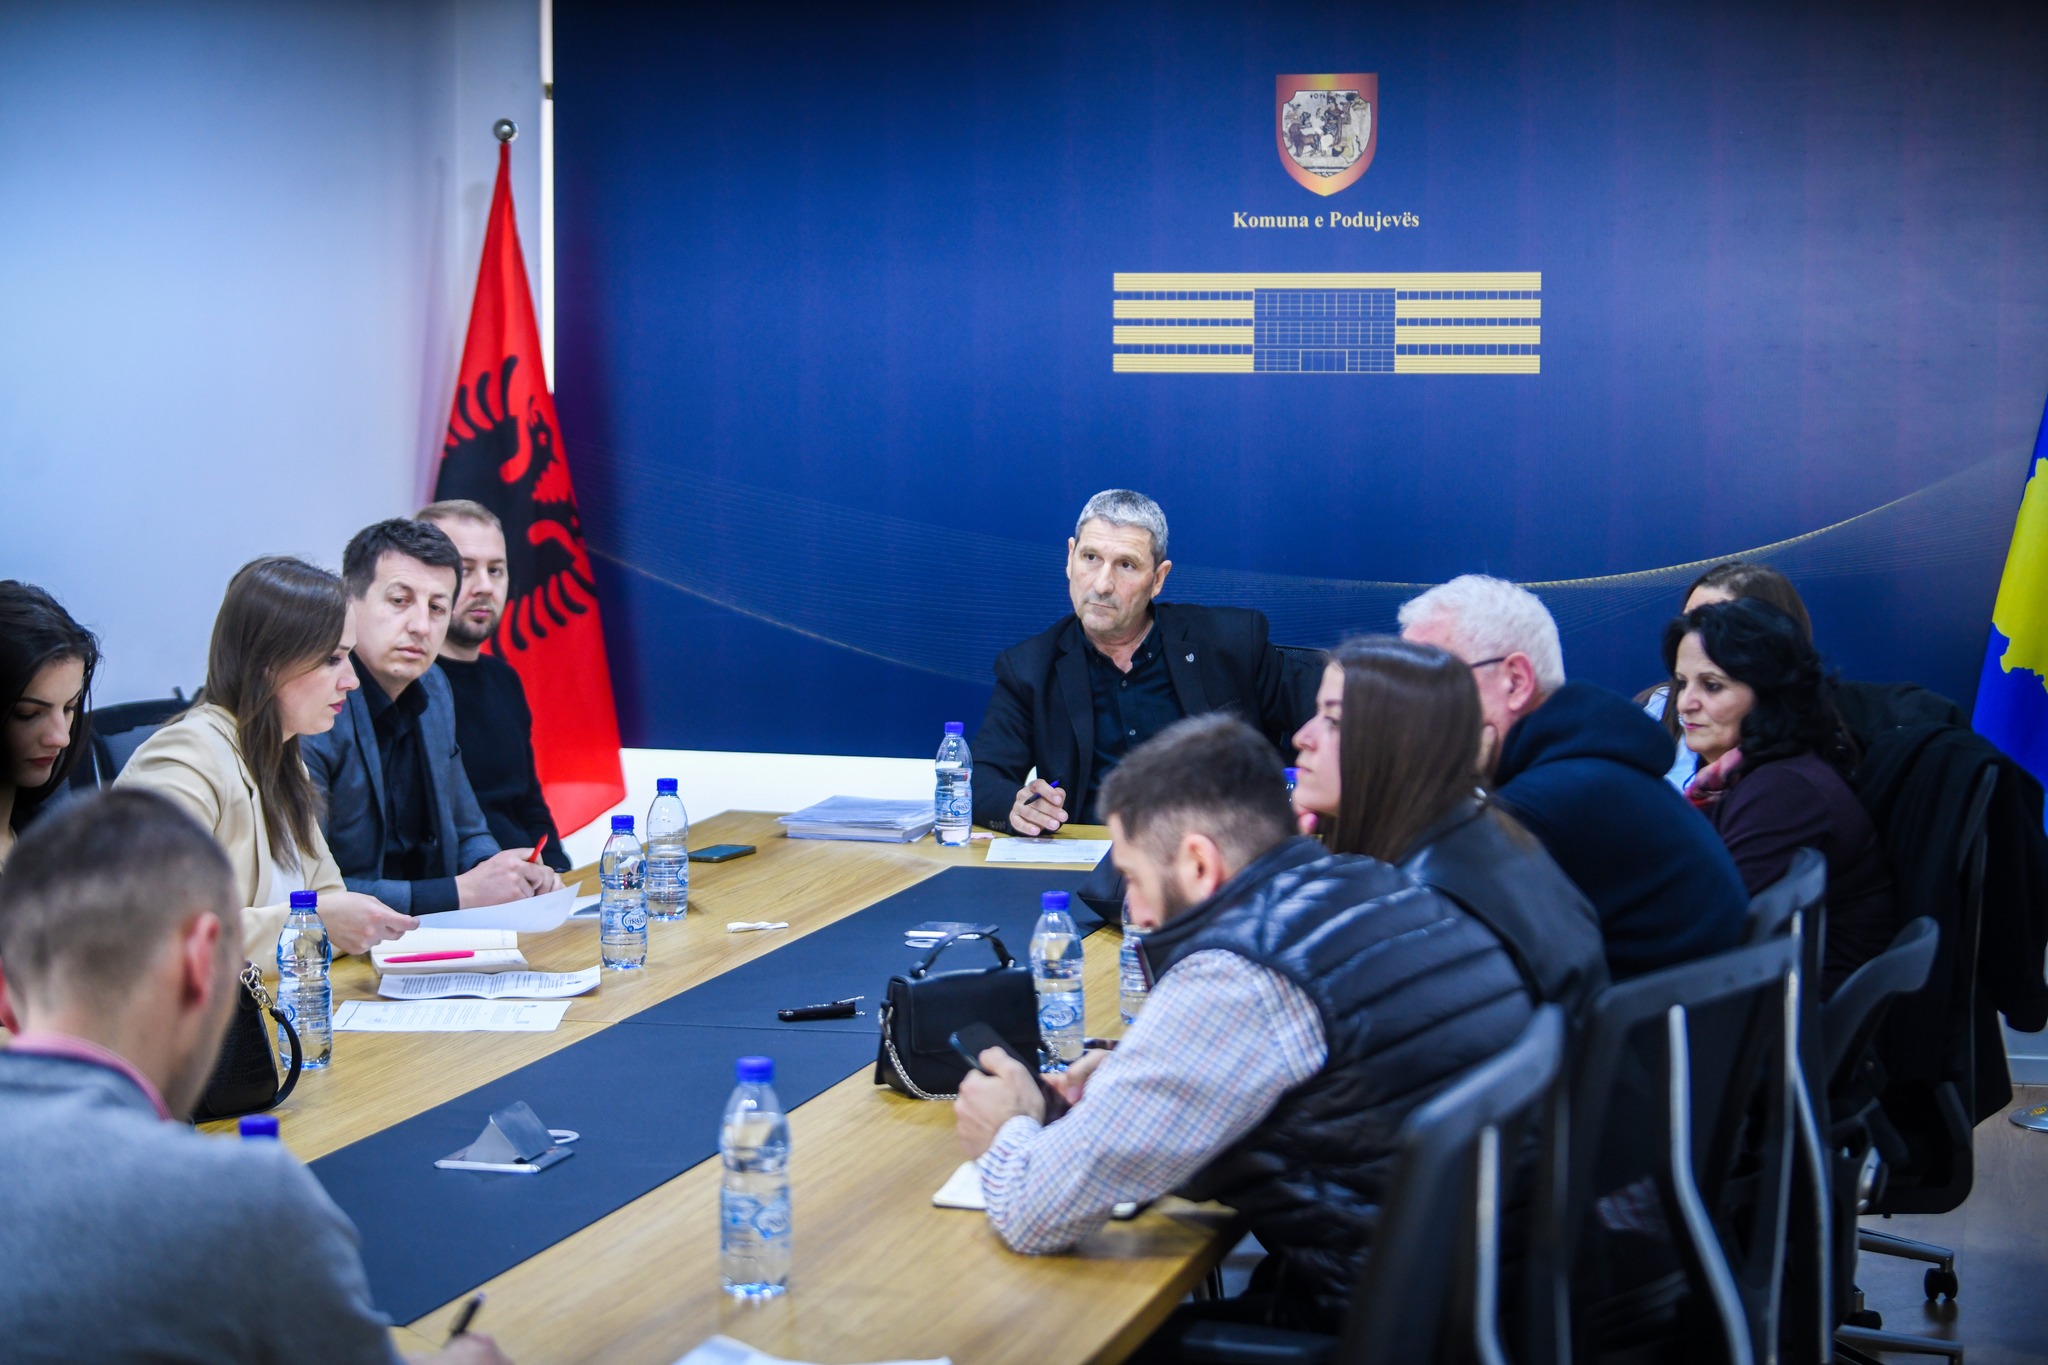  Komuna e Podujevës pritet të marrë këtë vendim me shumë rëndësi për bizneset